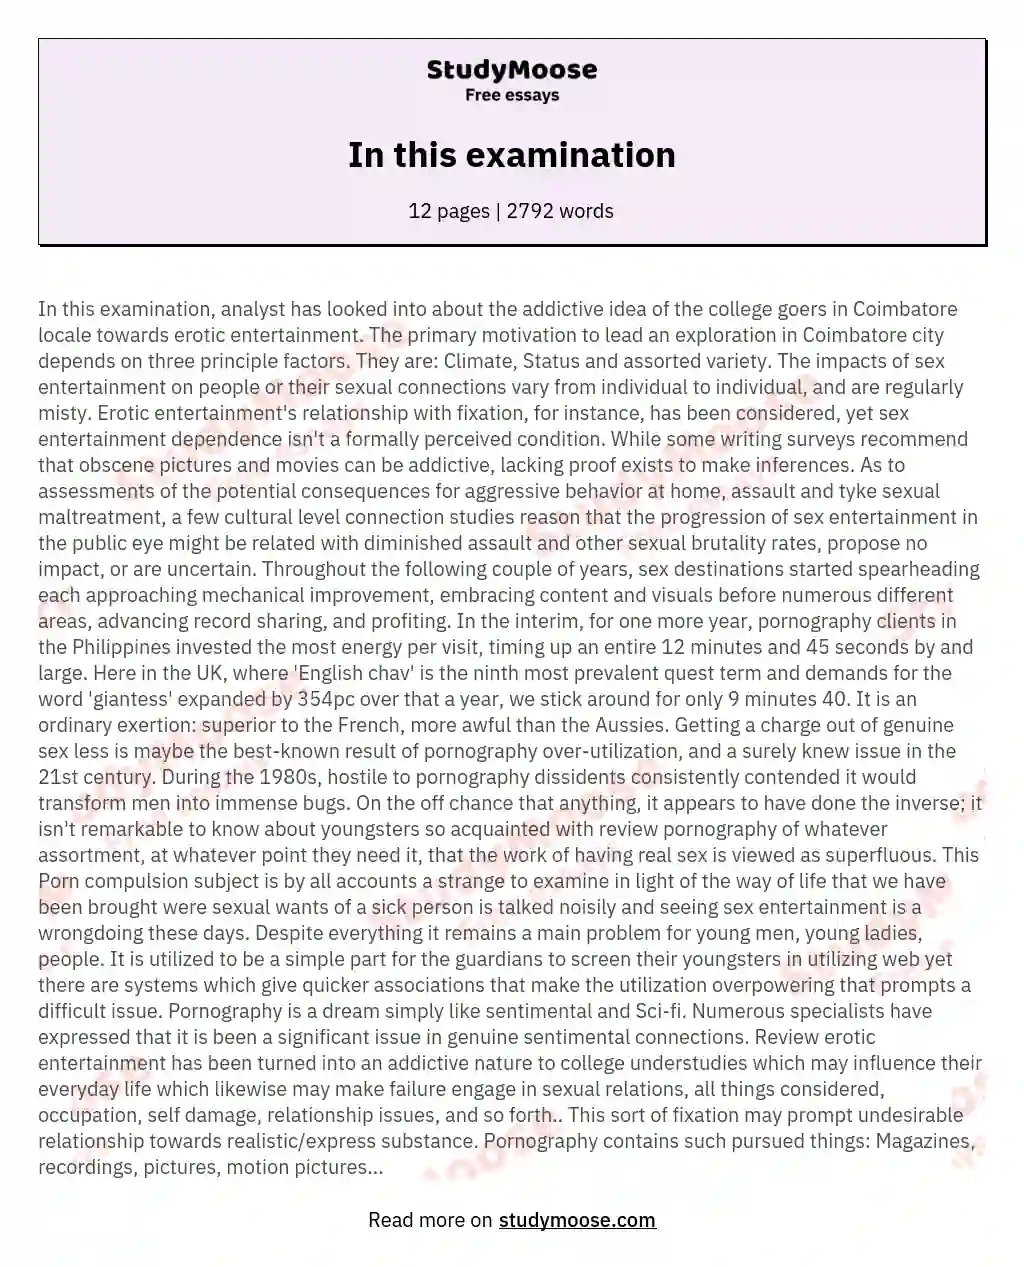 In this examination essay